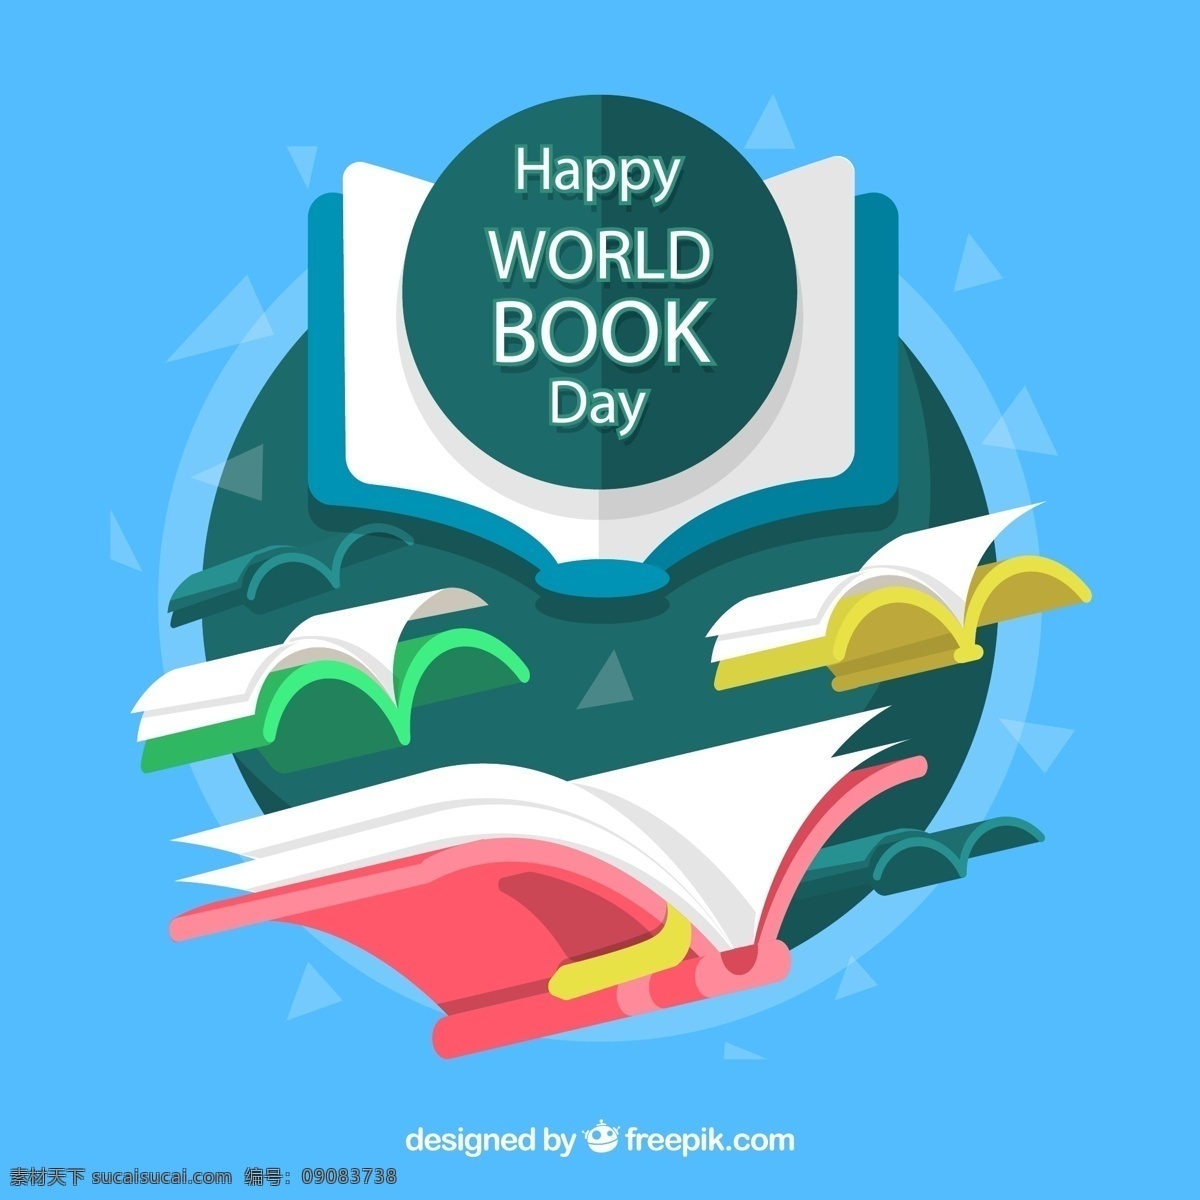 彩色 世界 图书 日 世界图书日 飞行 书籍 矢量图 格式 矢量 高清图片